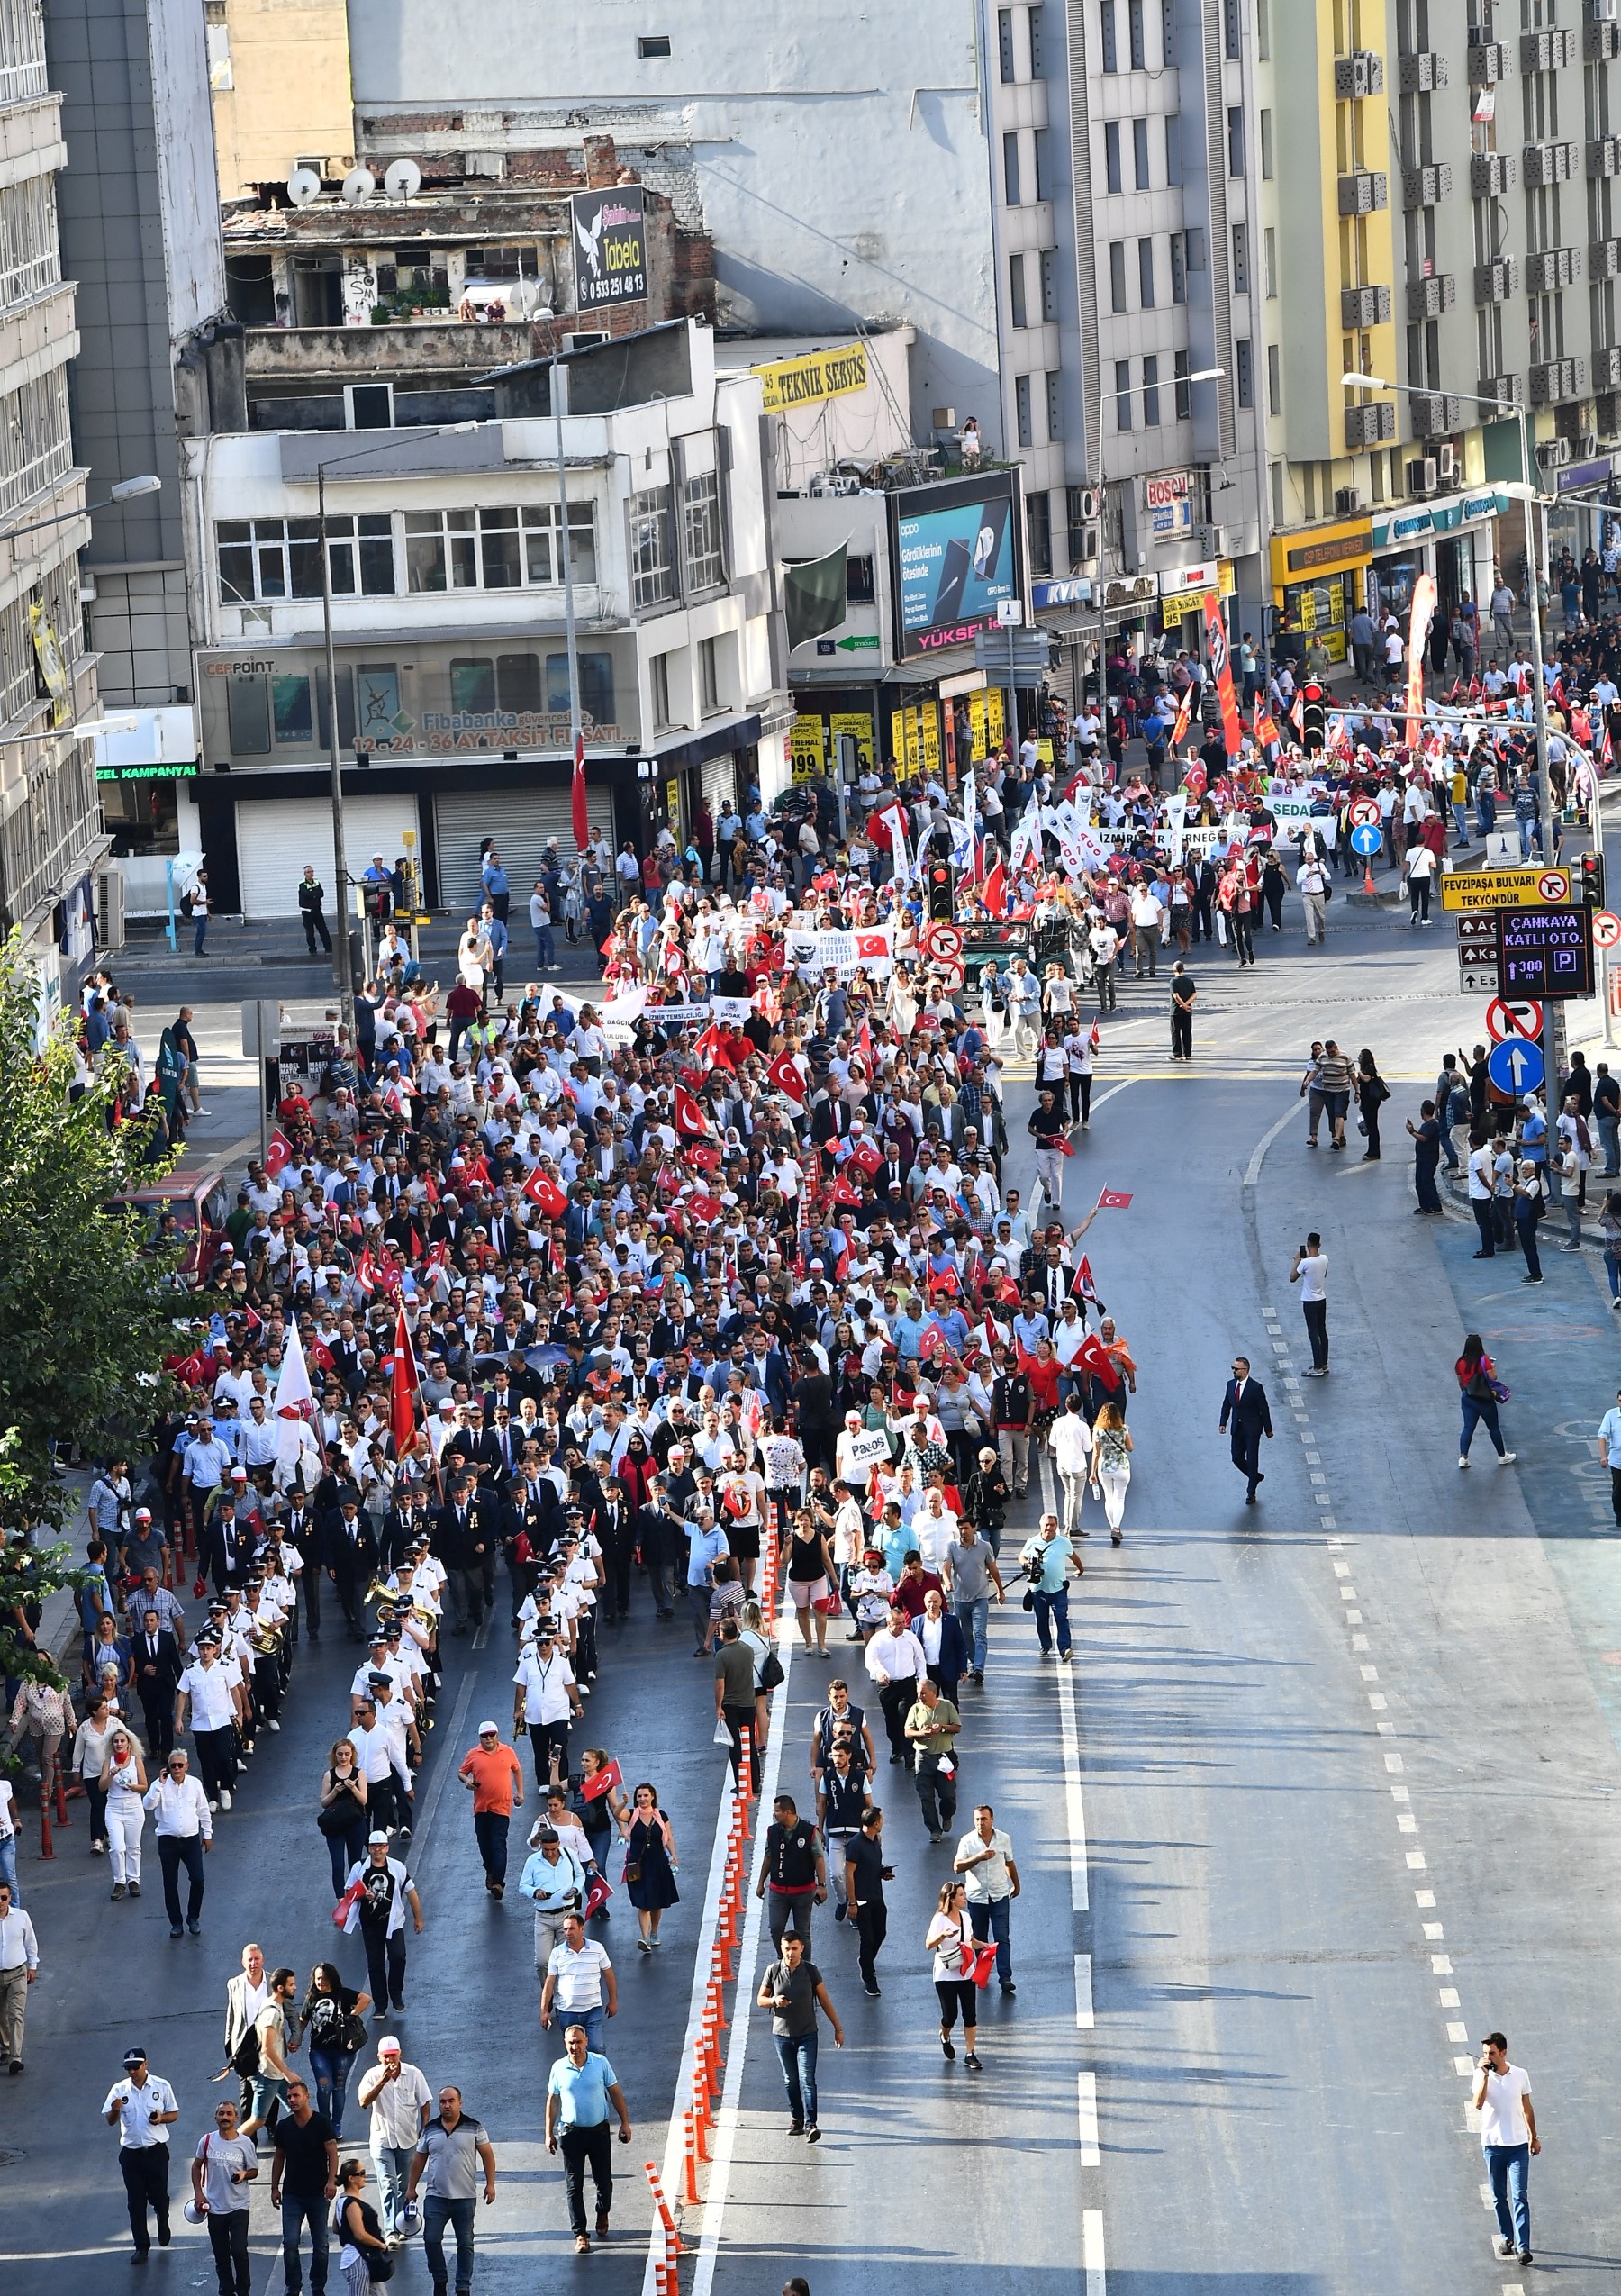 İzmir'de 9 Eylül coşkusu